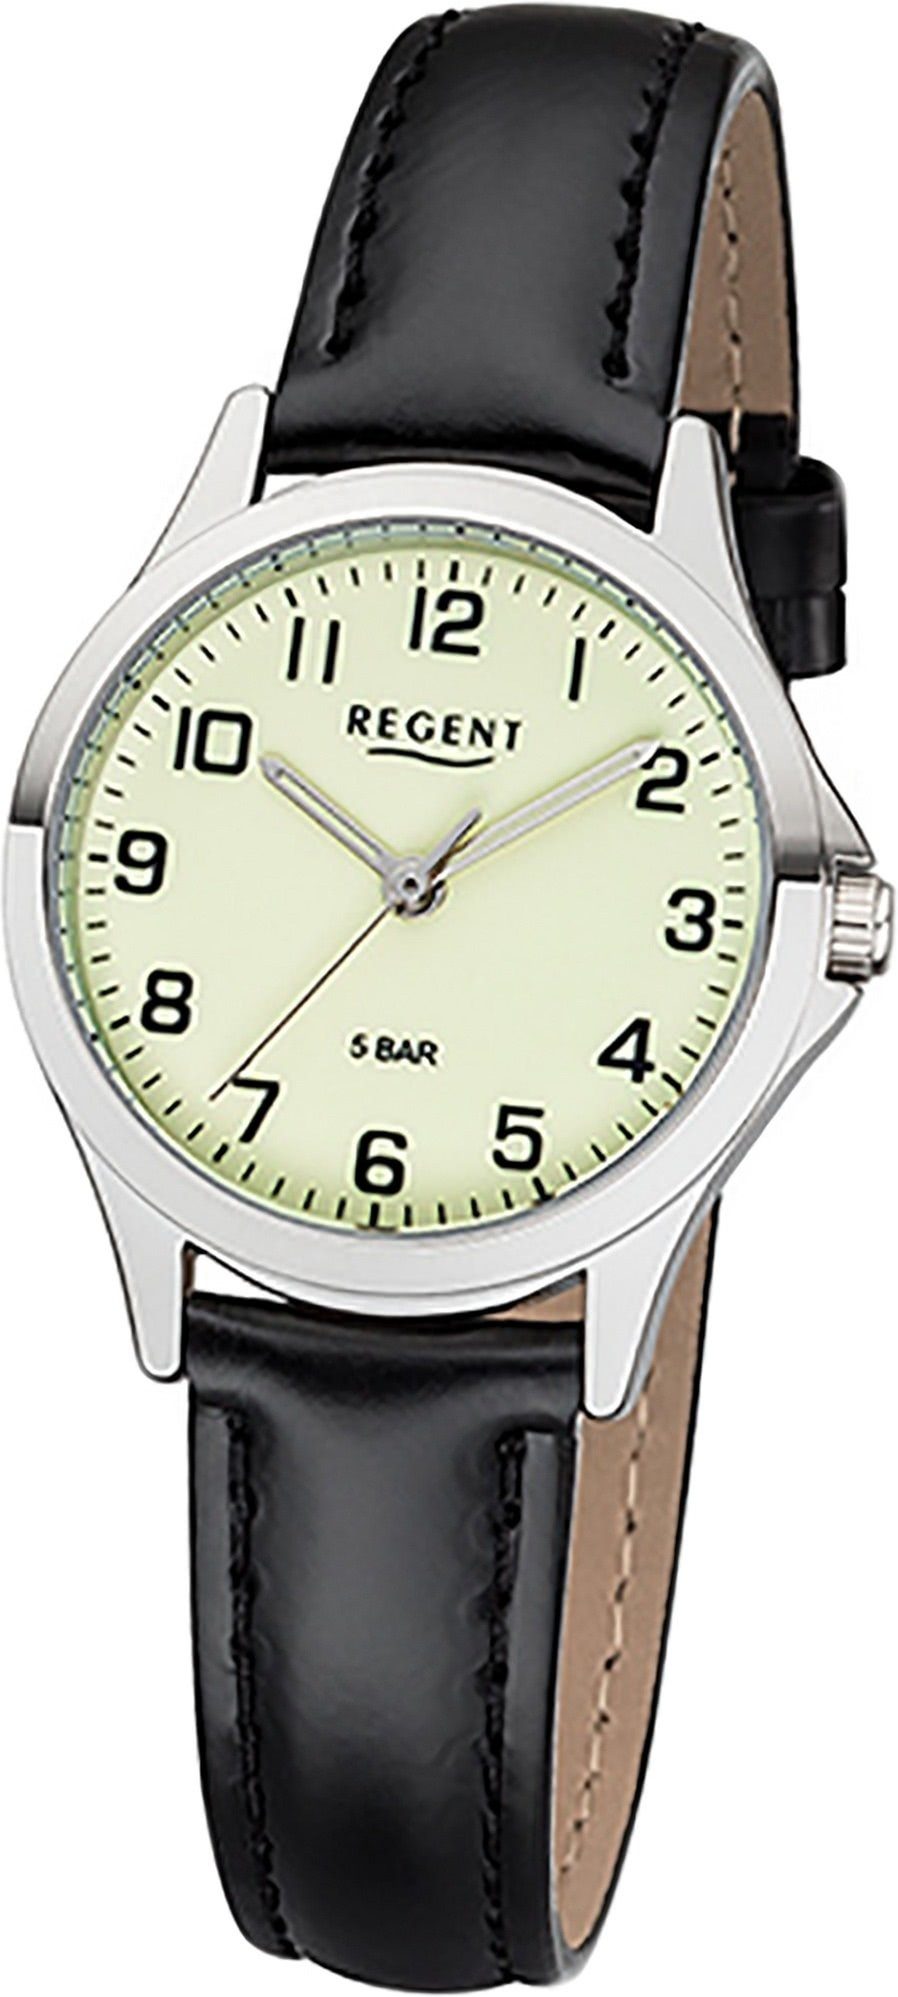 Regent Quarzuhr Regent Leder Damen Uhr 2112427 Analog, Damenuhr Lederarmband schwarz, rundes Gehäuse, klein (ca. 29mm)